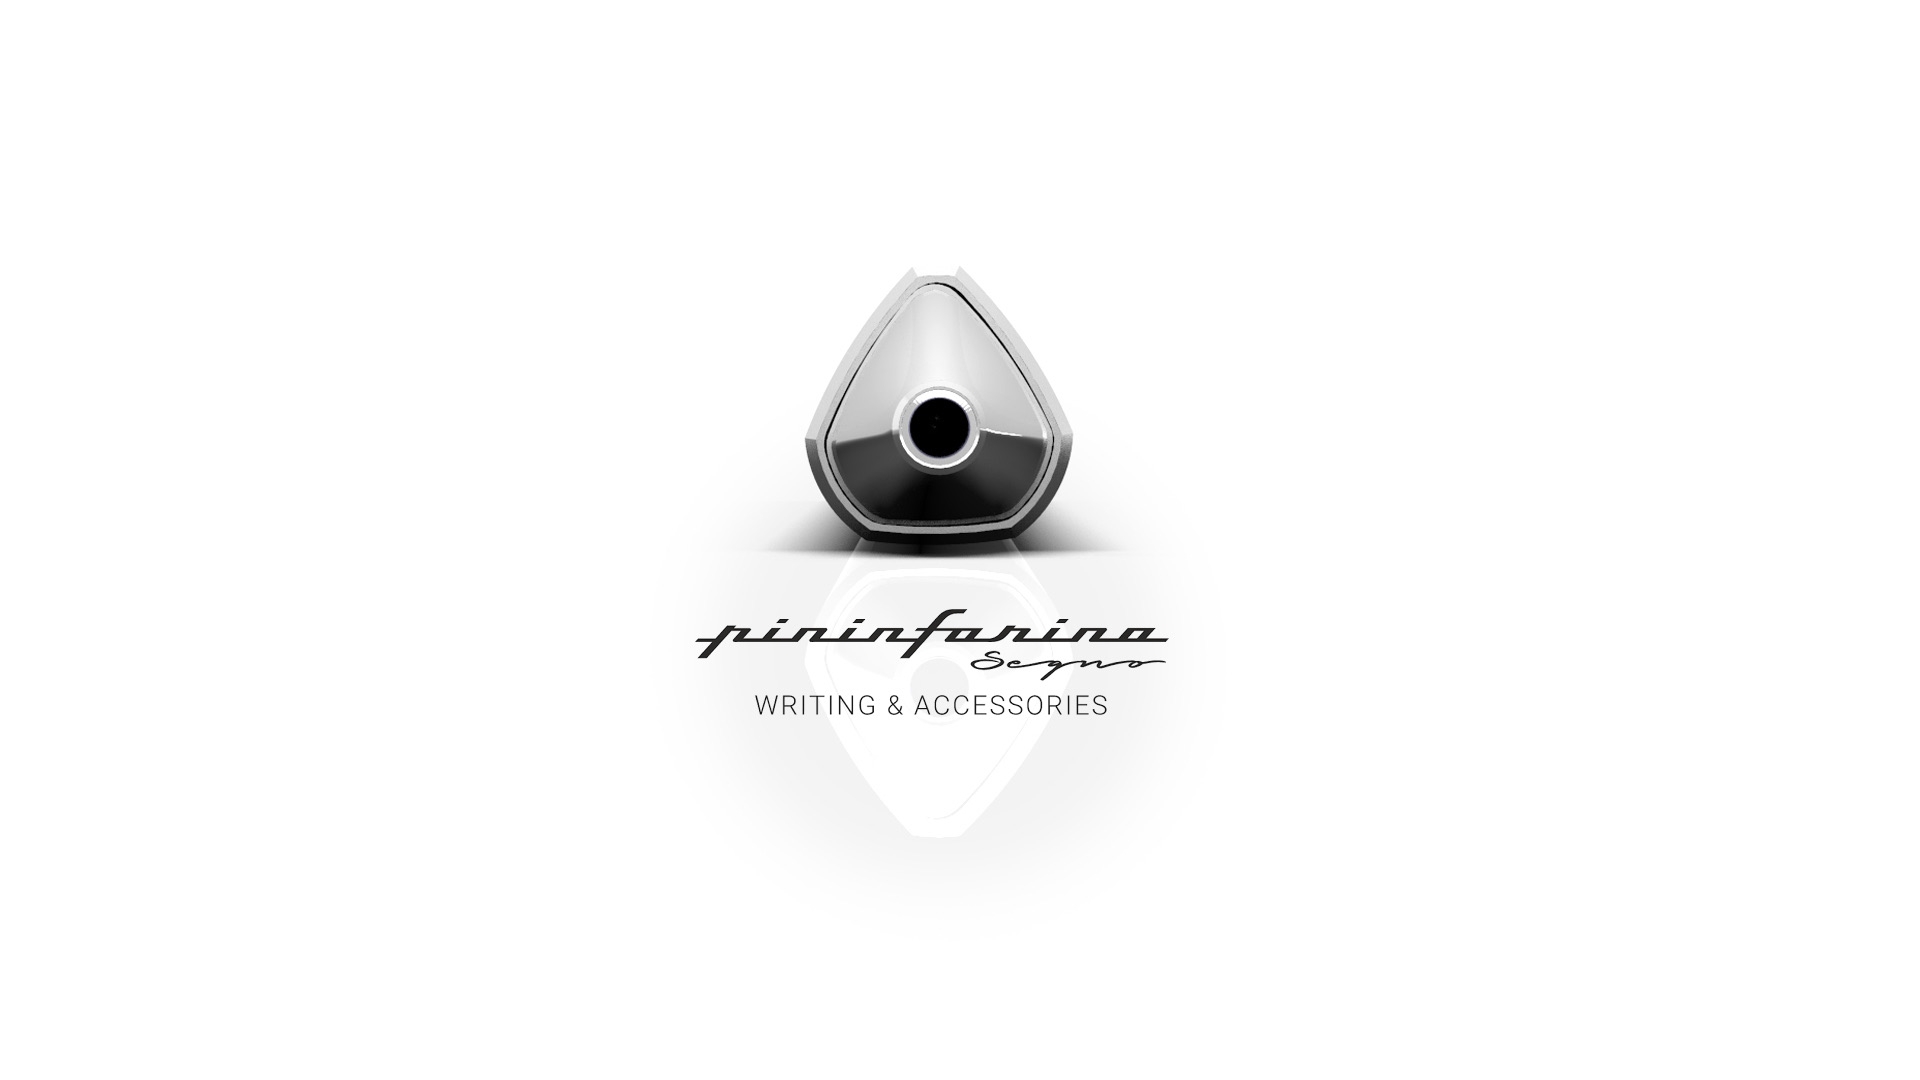 Шариковая ручка Pininfarina PF One SILVER, #c0c0c0, алюминий